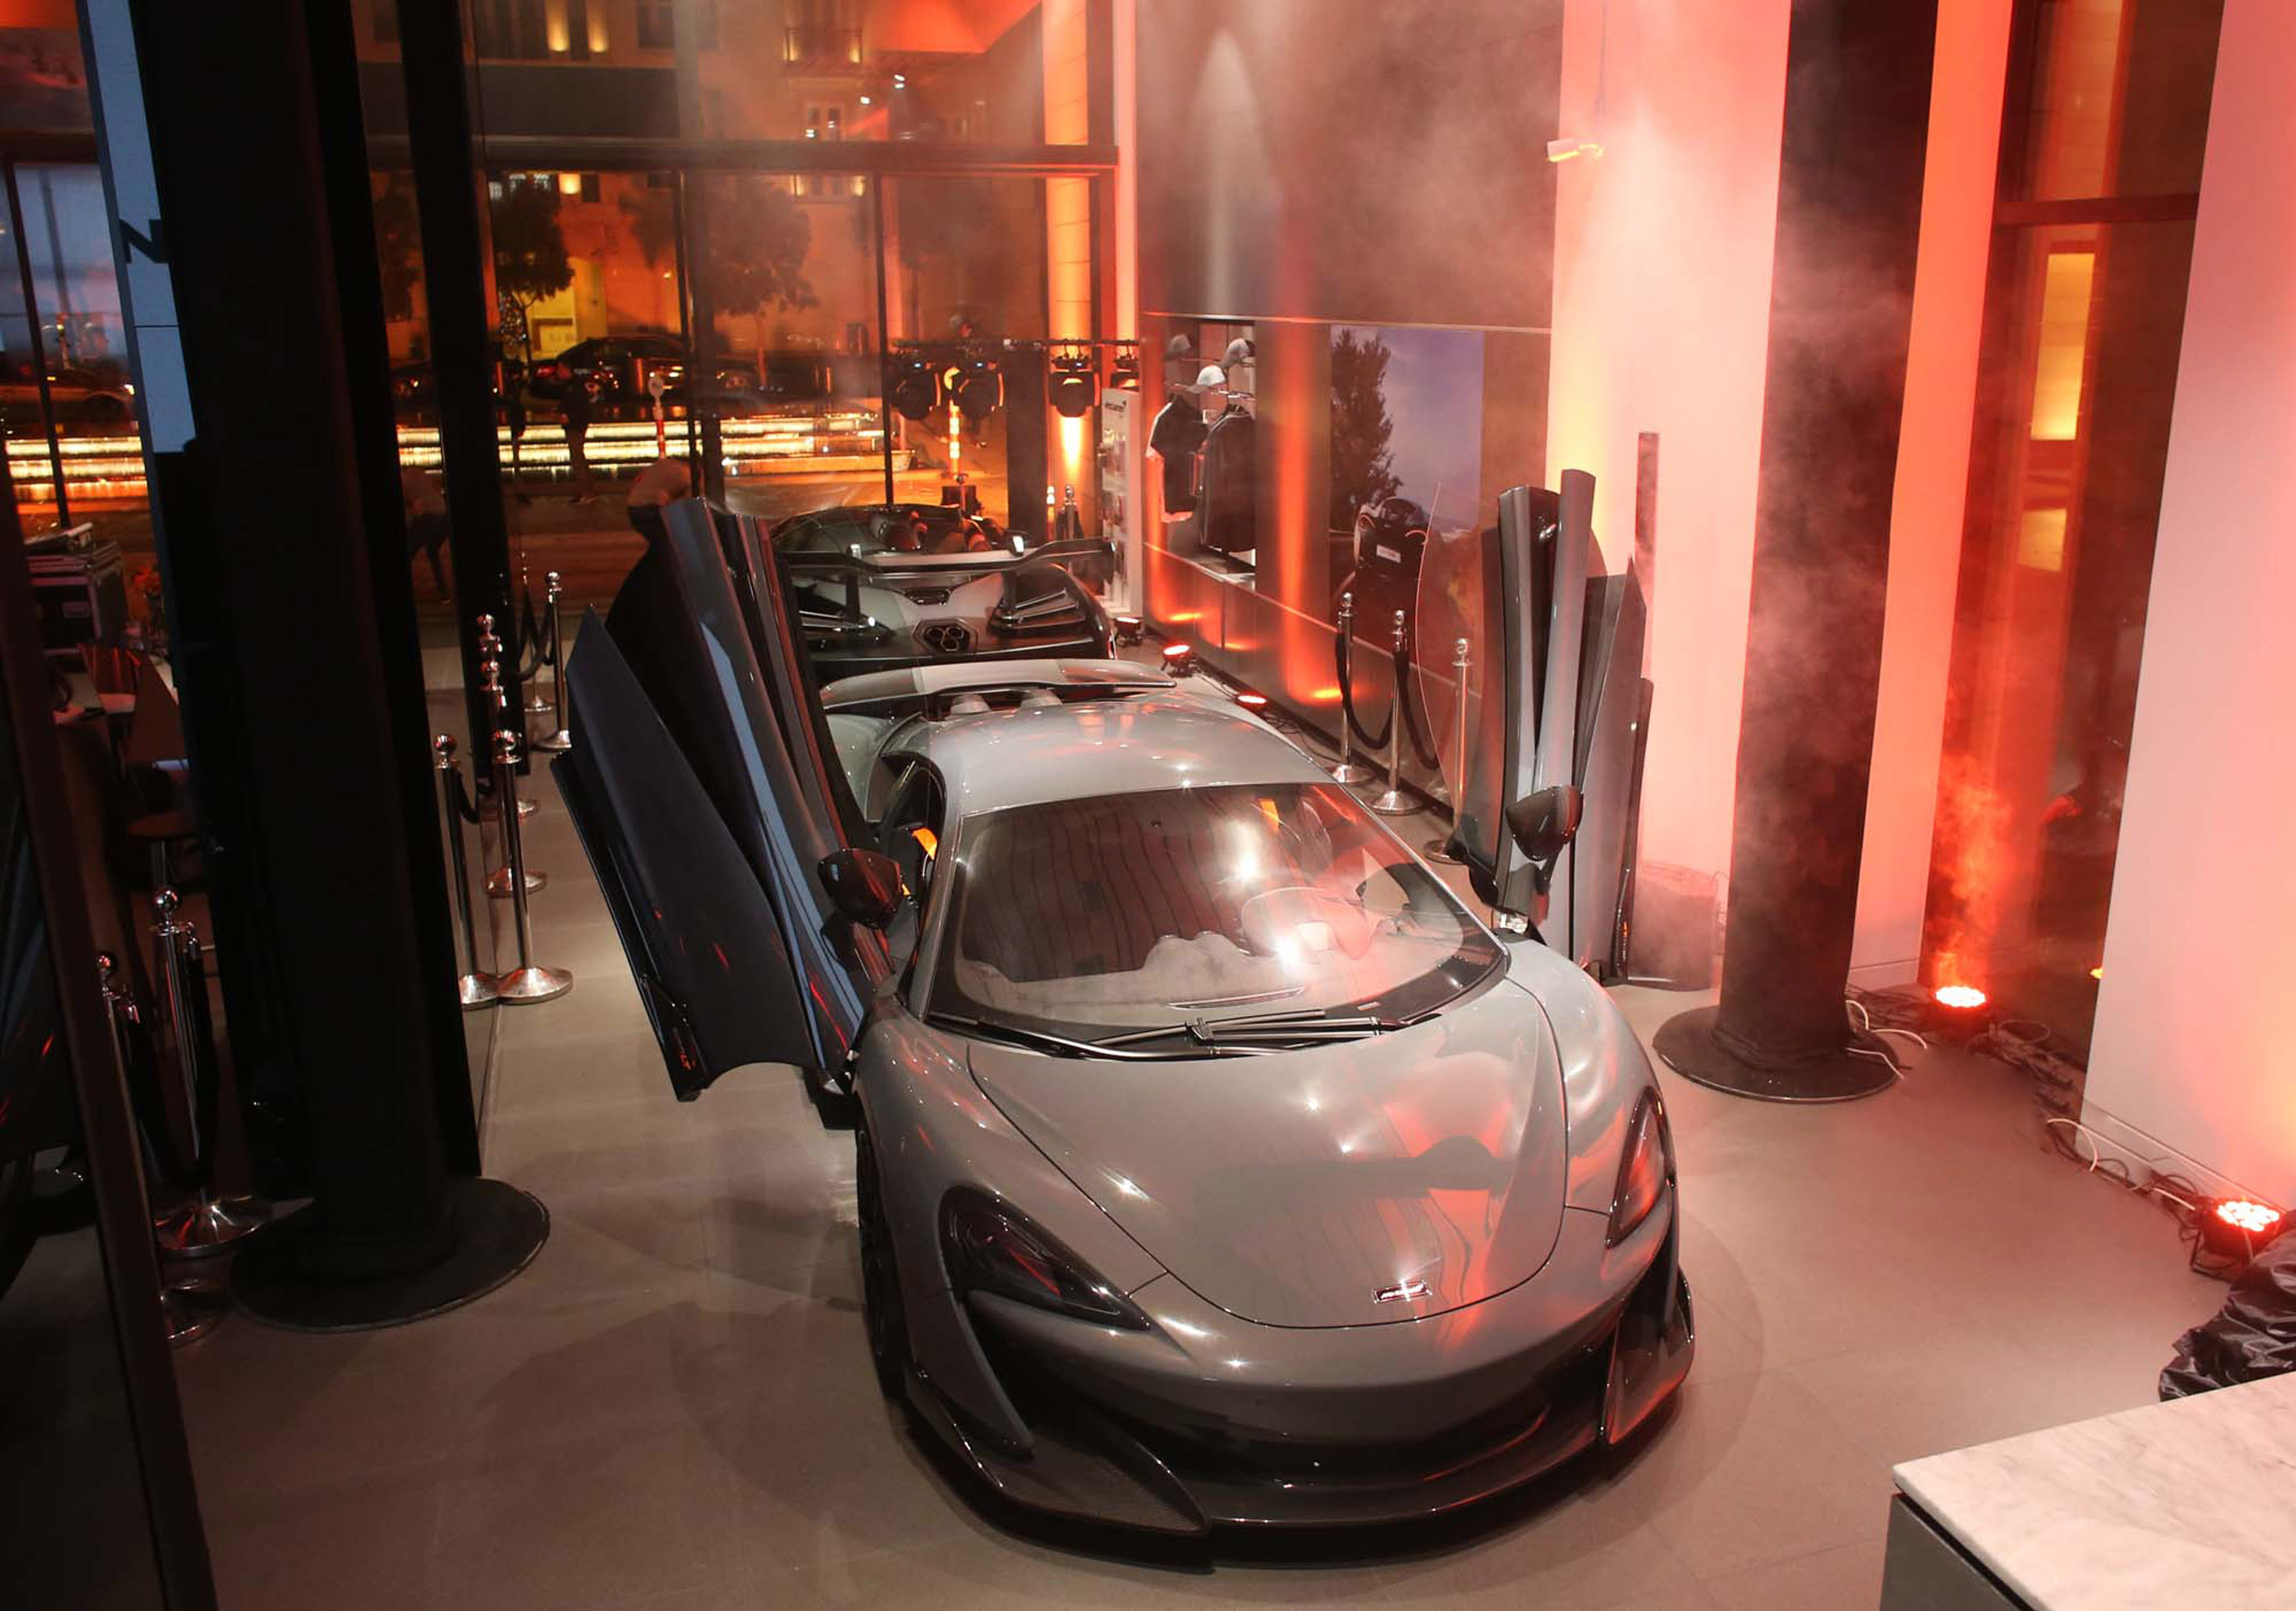 Ограниченная серия знаменует собой начало следующей главы в истории McLaren Longtail и устанавливает новый стандарт скорости, мощности и изысканности во всем сегменте. Автомобиль был полностью переоснащен и получил минимальный вес, улучшенную аэродин